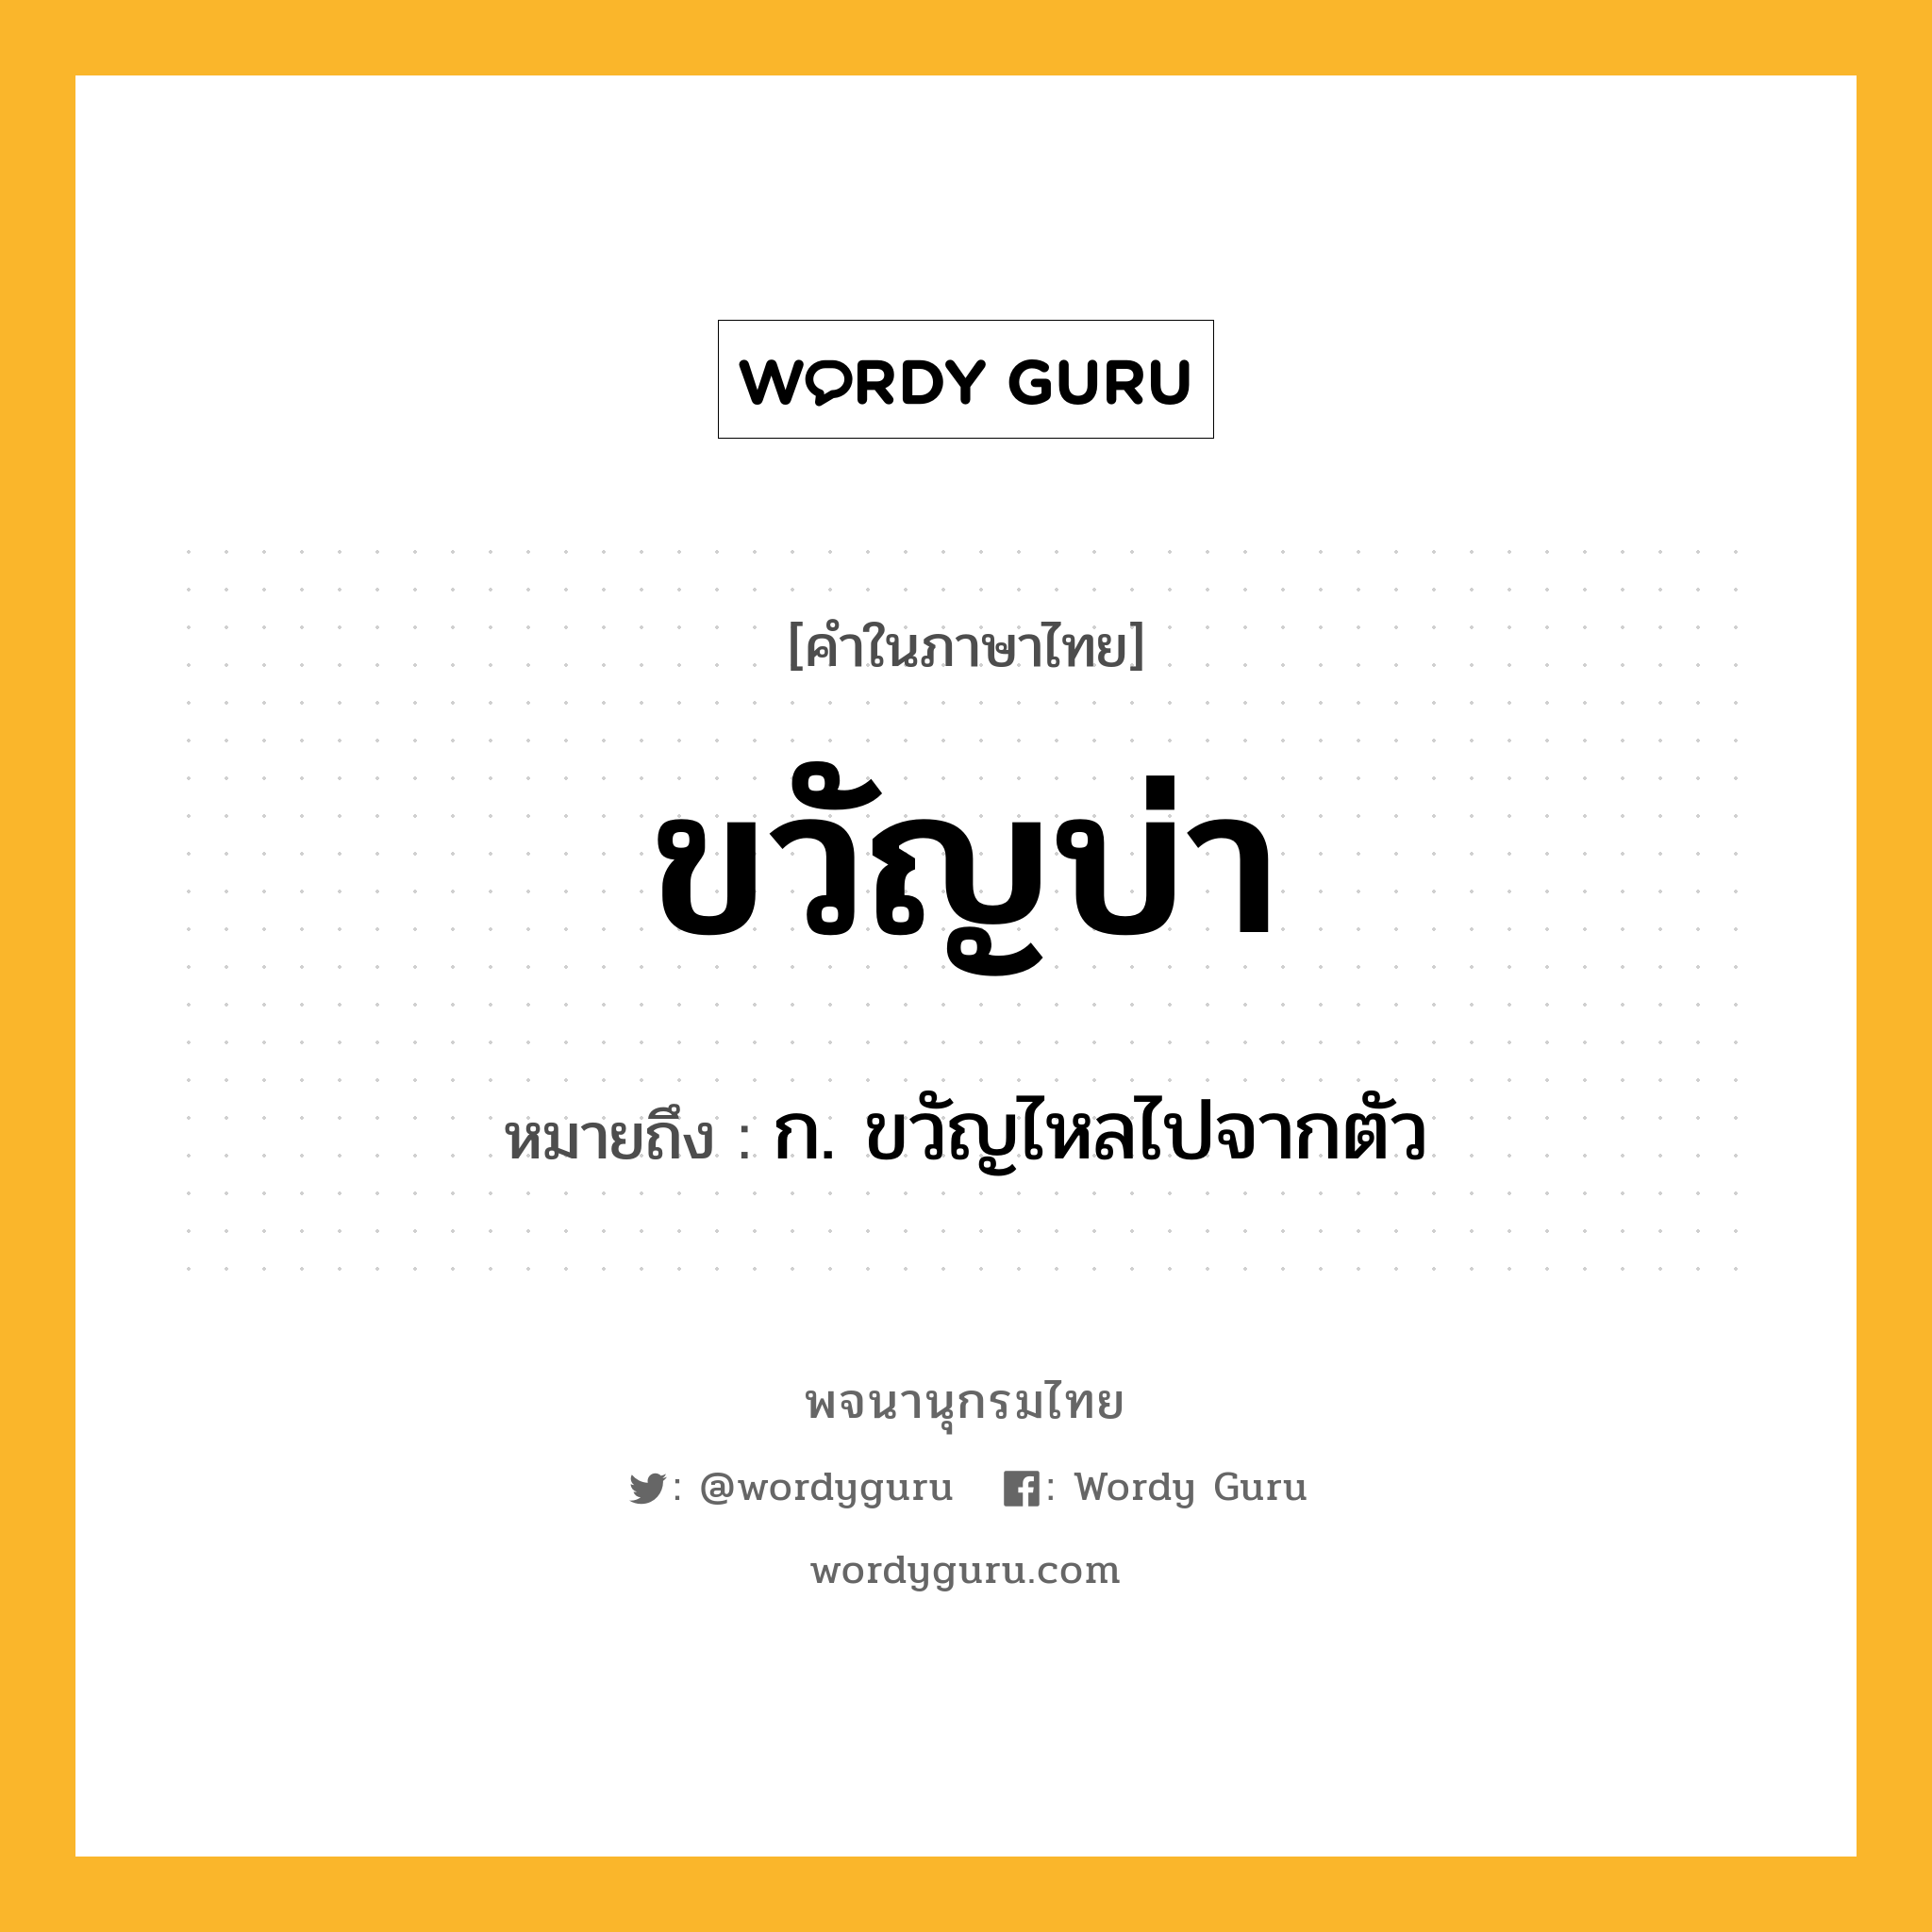 ขวัญบ่า หมายถึงอะไร?, คำในภาษาไทย ขวัญบ่า หมายถึง ก. ขวัญไหลไปจากตัว